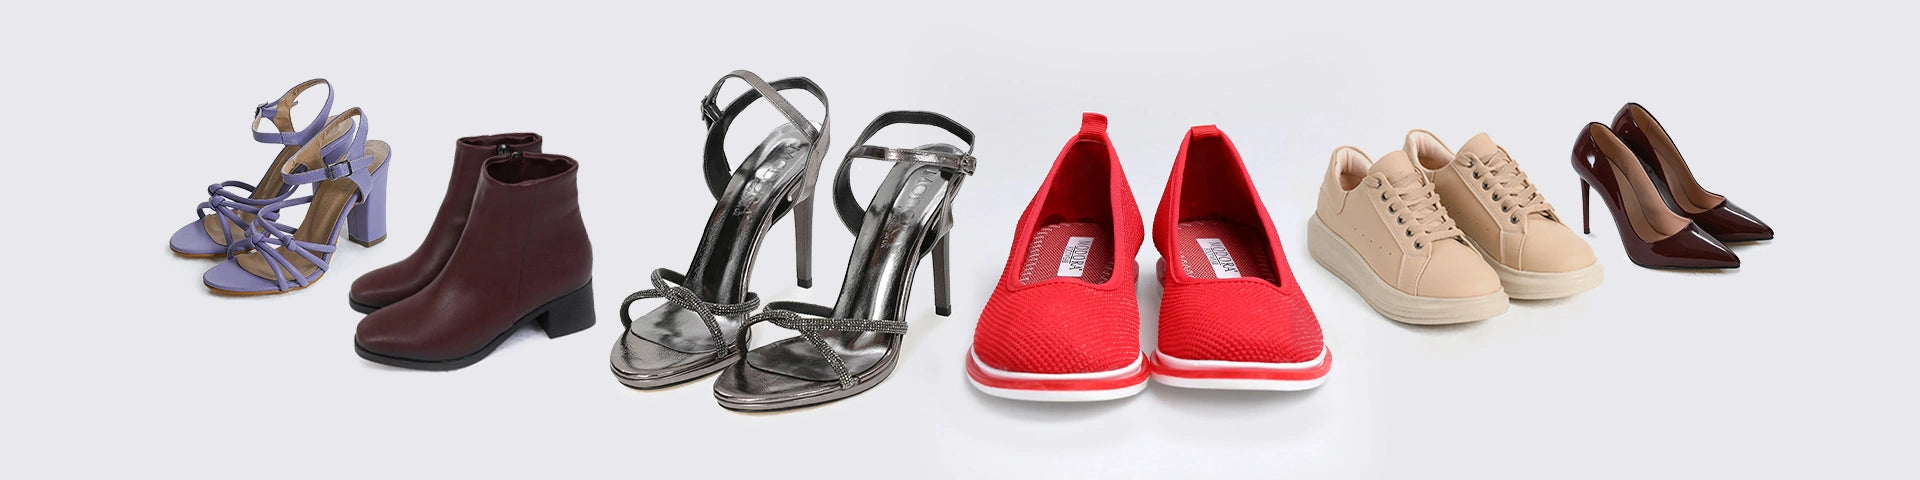 Footwear for Women Online  Shoe, Heels, Mules – Modora UK